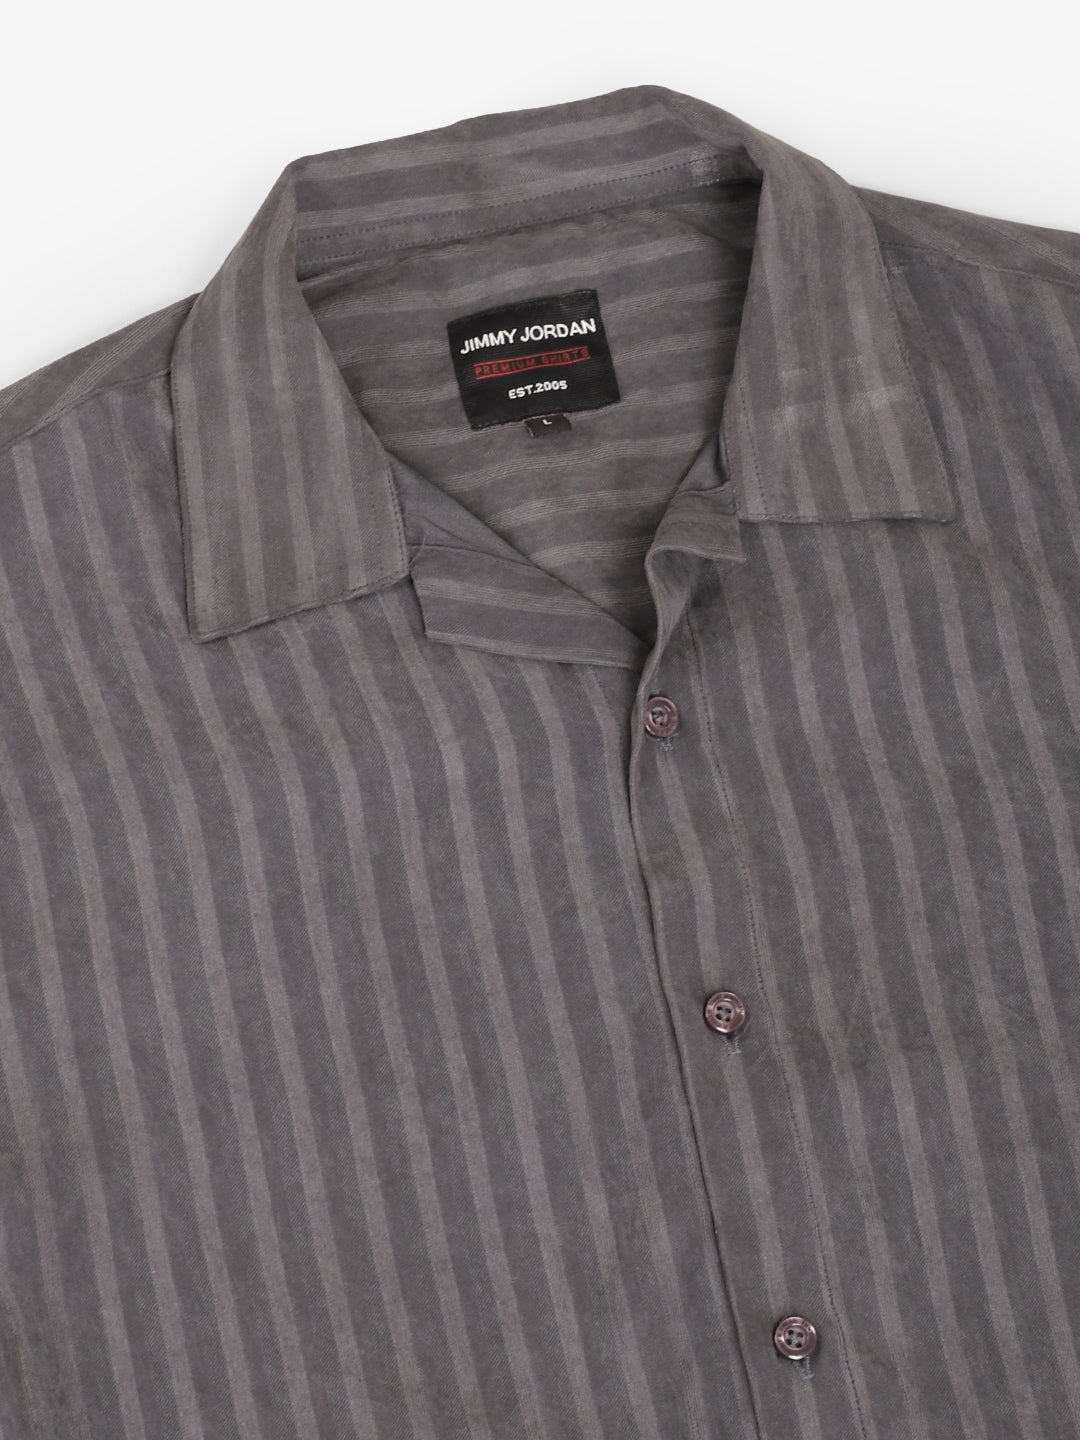 Basic Stripe Dark Grey Half Sleeve Shirt